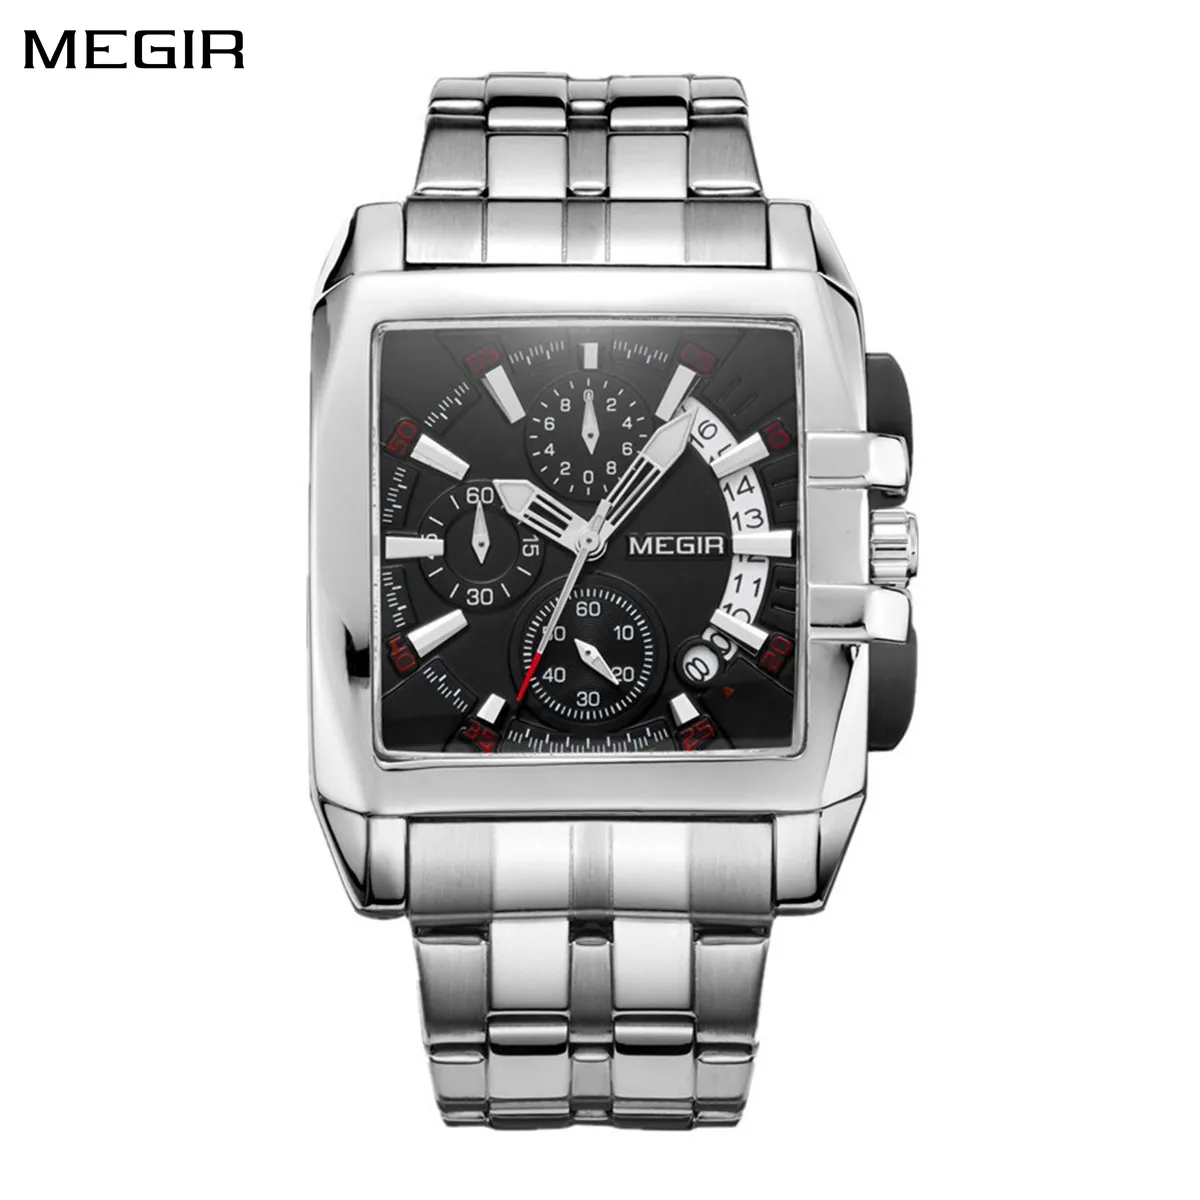 Megir-homens relógio de pulso em aço inoxidável, quartzo, negócios, mostrador grande, original, luxo